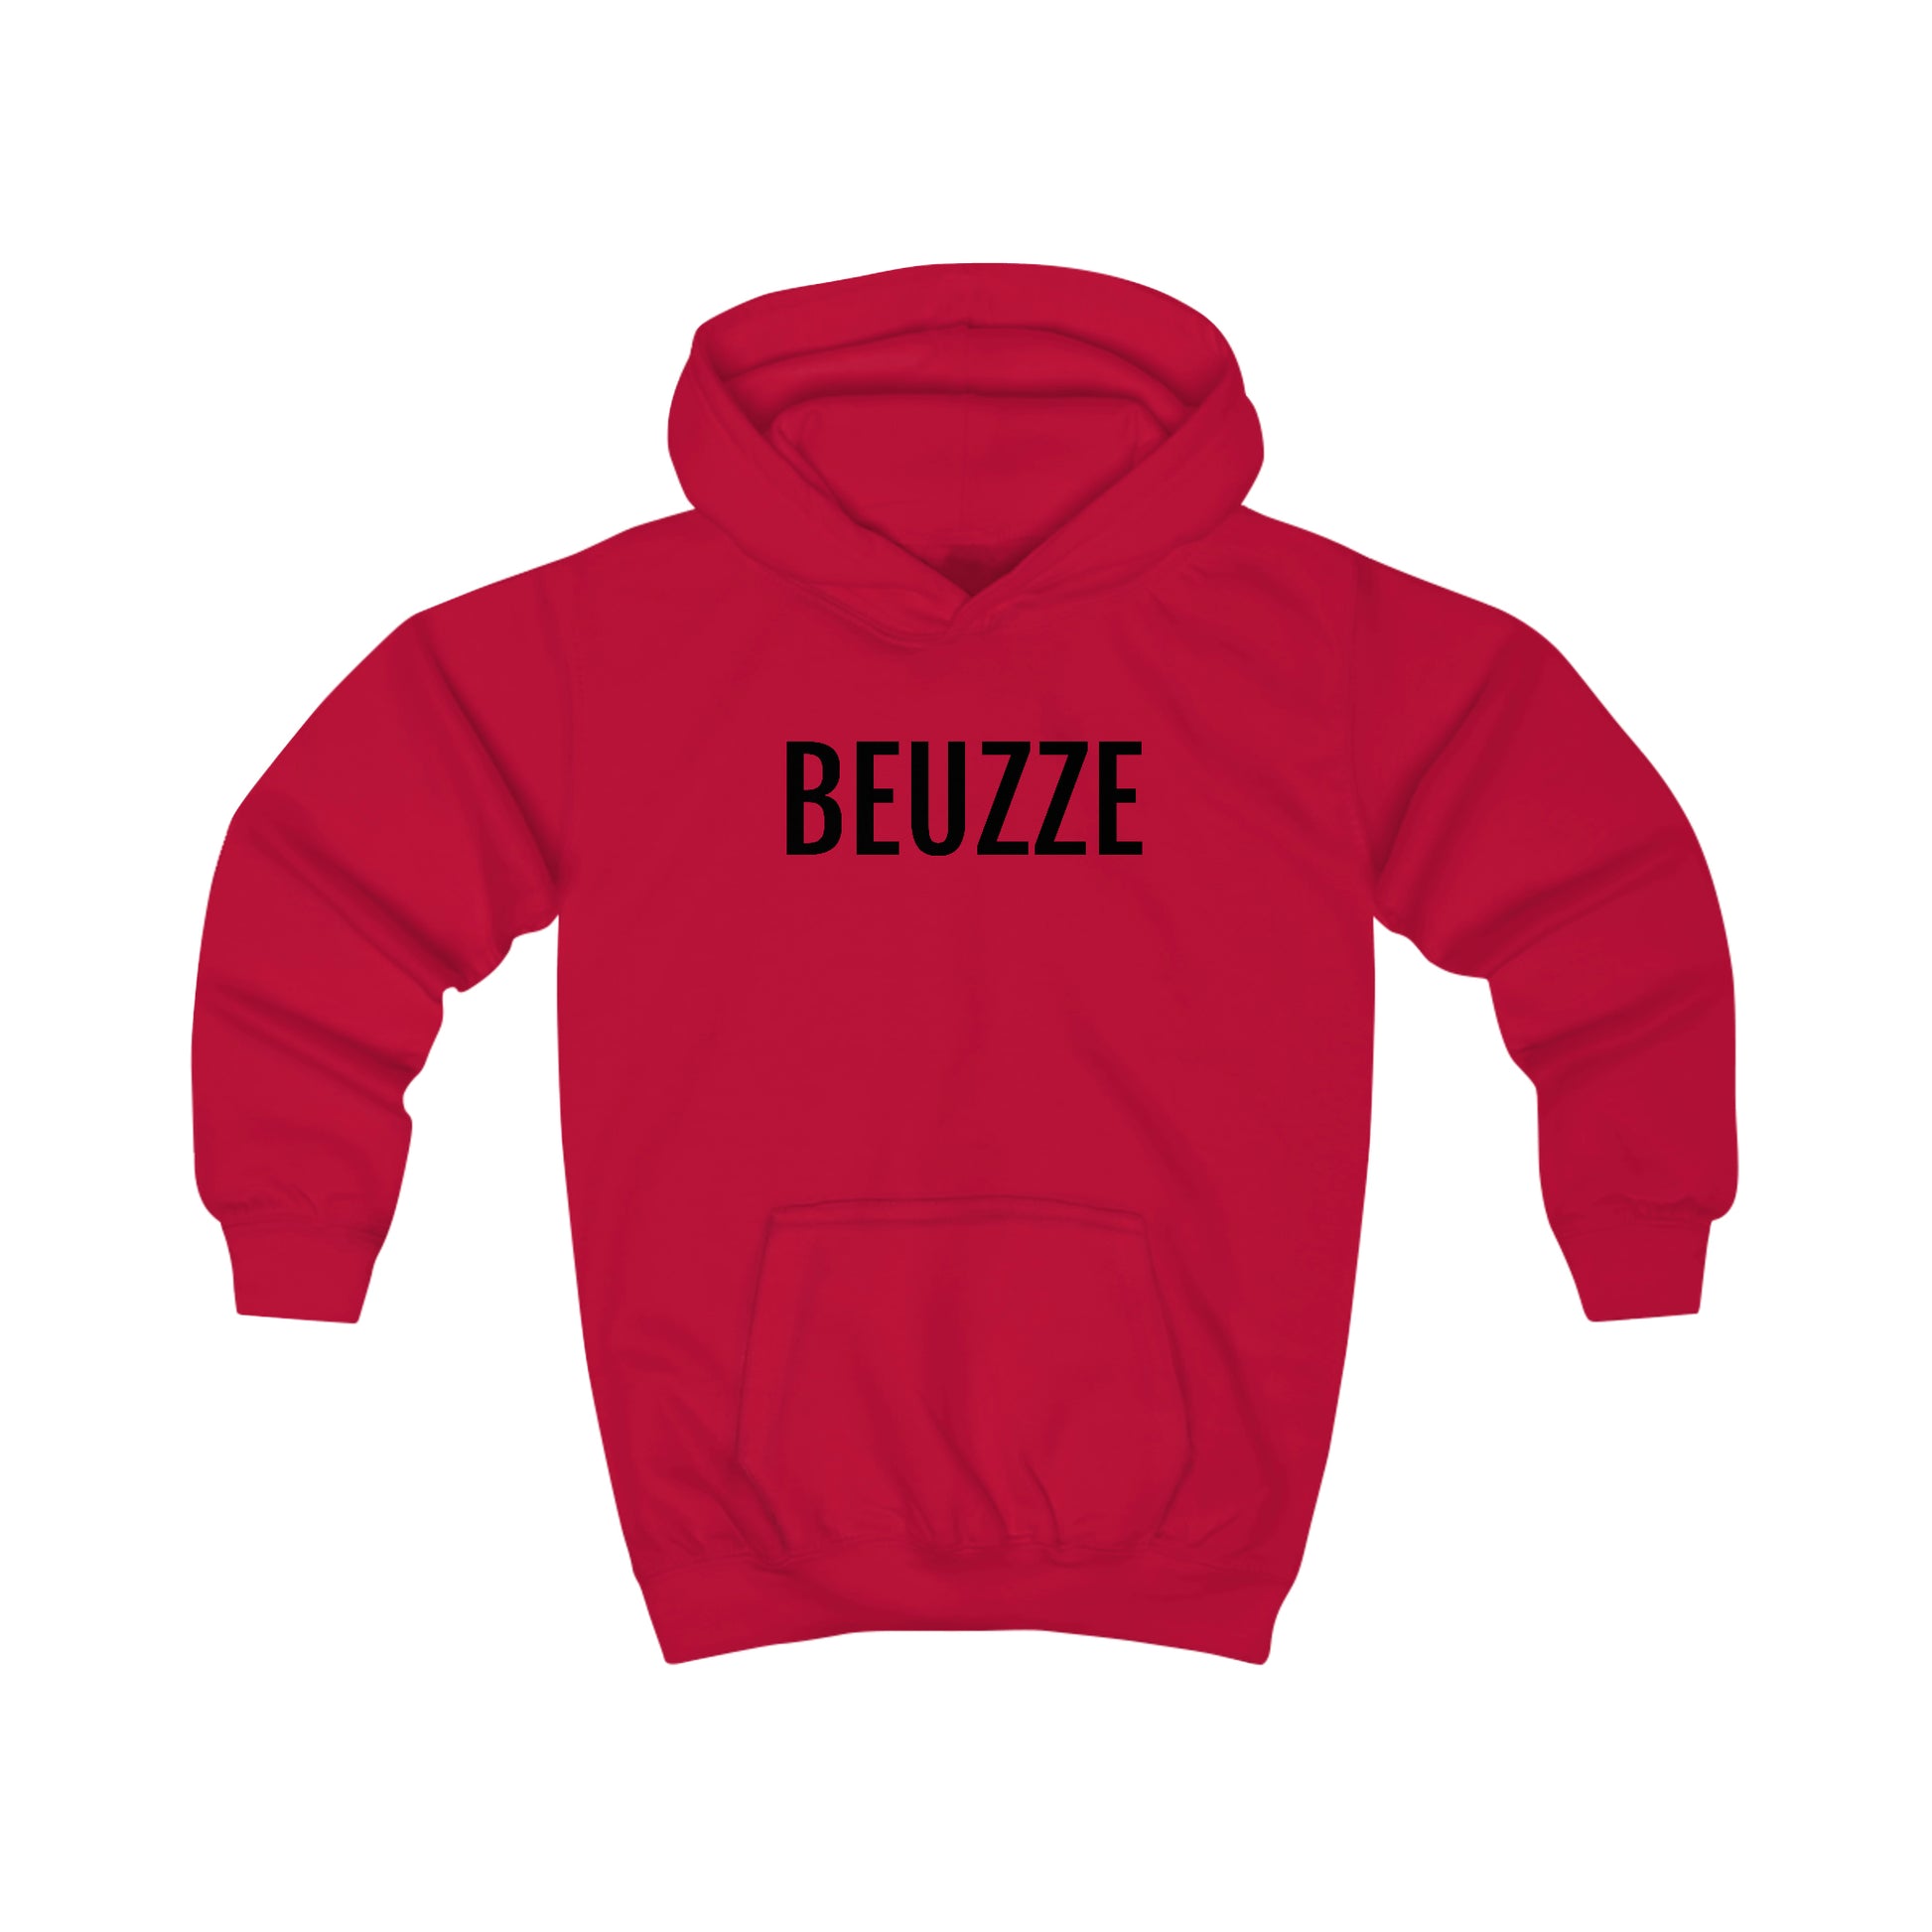 Rode trui met kap voor kinderen met Beuzze opdruk in het Brussels dialect